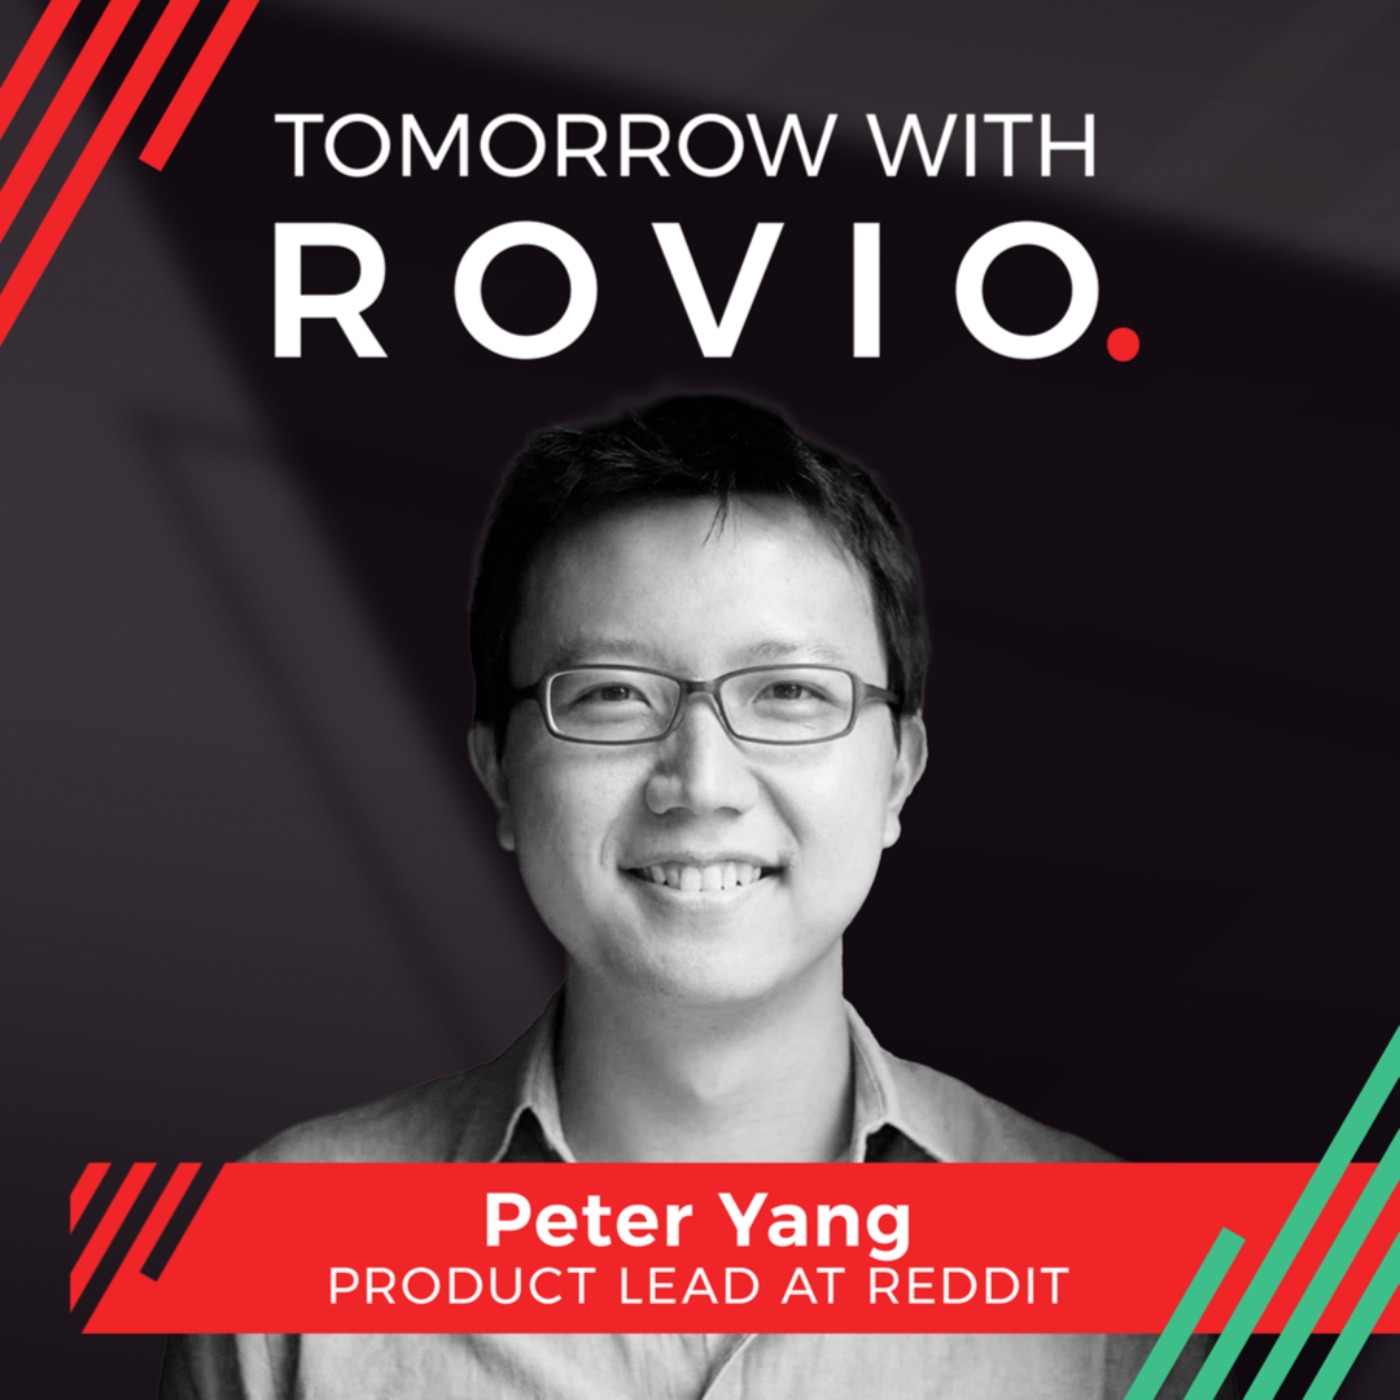 Peter Yang - Product Lead at Reddit